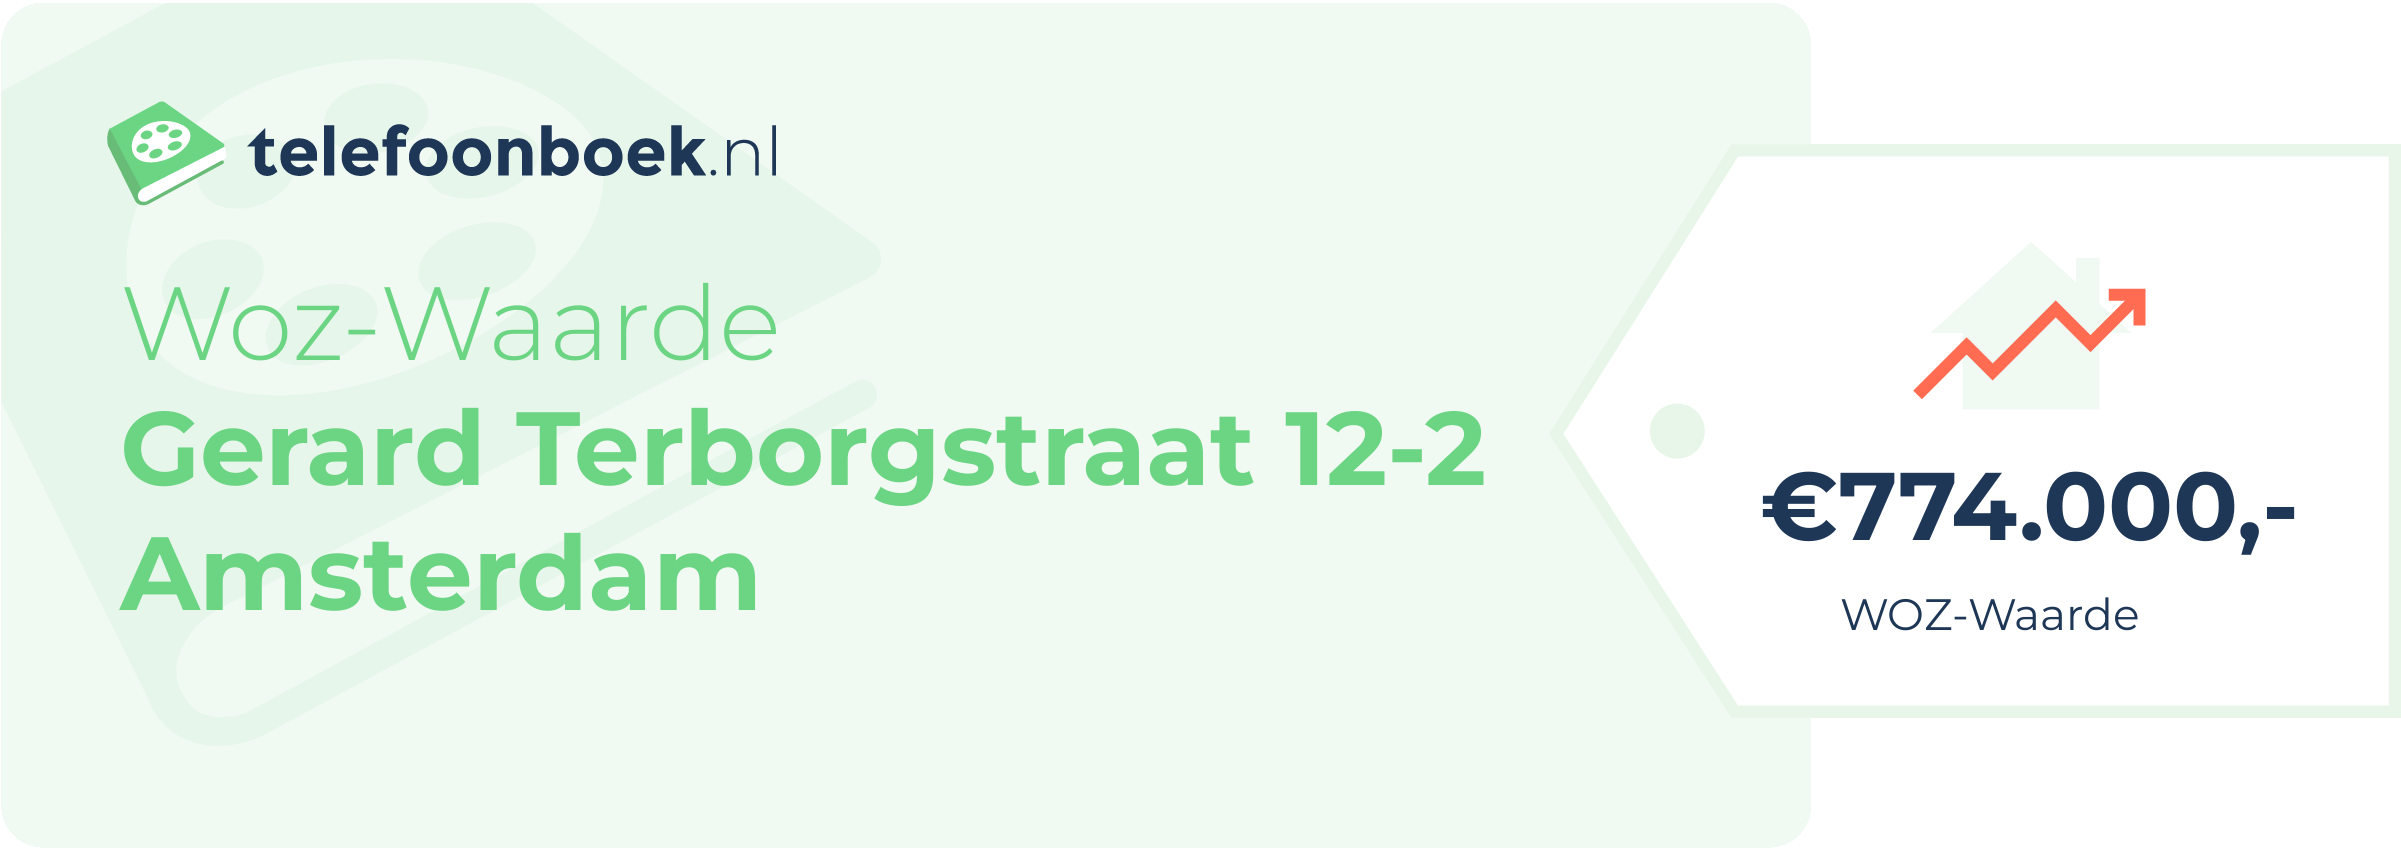 WOZ-waarde Gerard Terborgstraat 12-2 Amsterdam